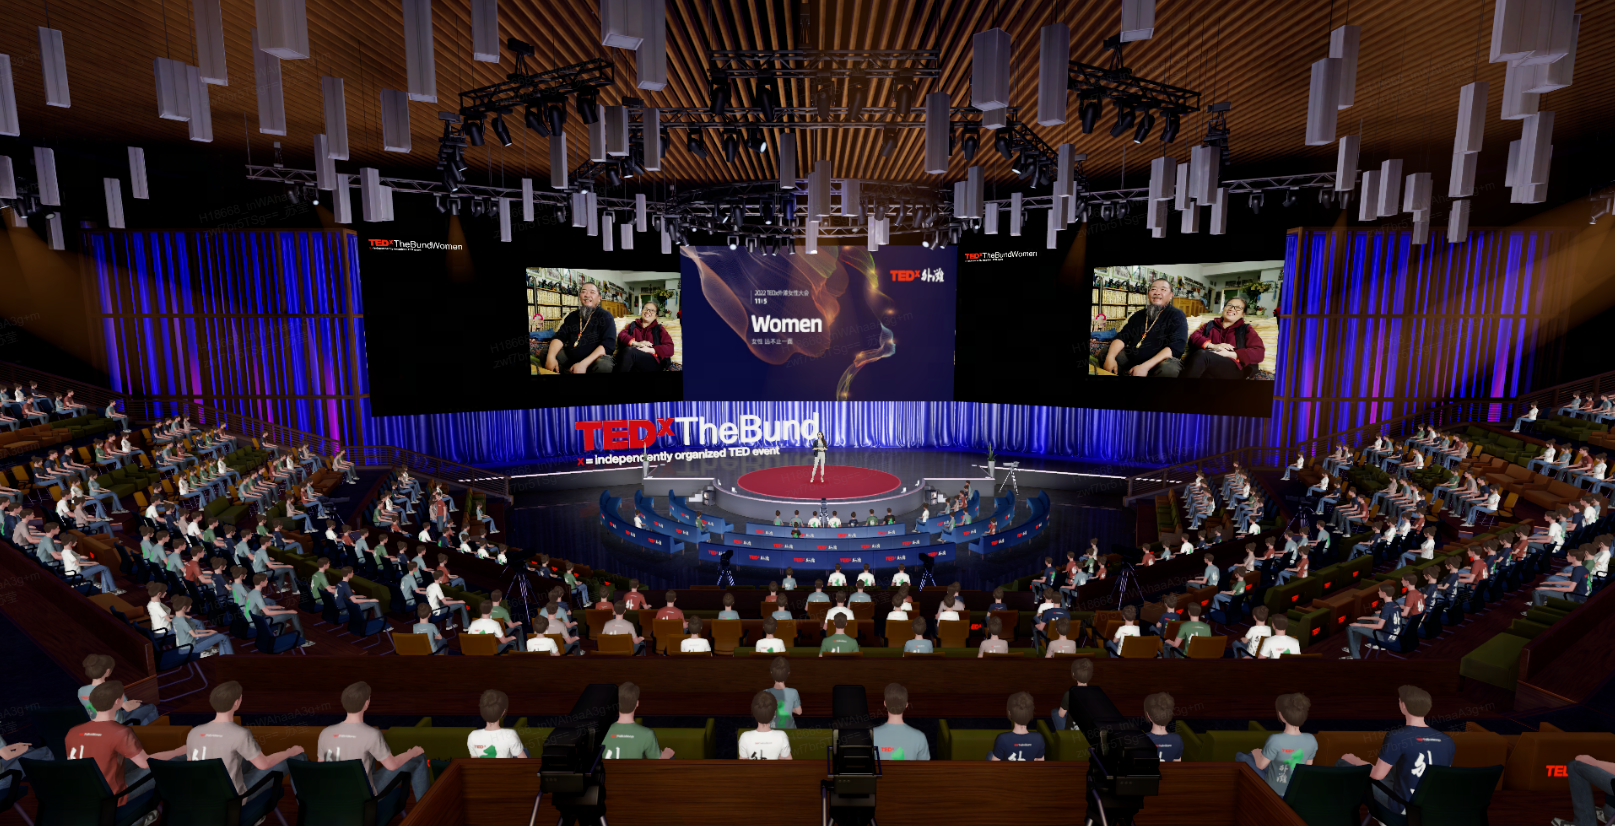 图片展示了一个TEDx活动，现场观众聚焦于演讲台，台上屏幕显示“Women”字样，气氛庄重热烈。